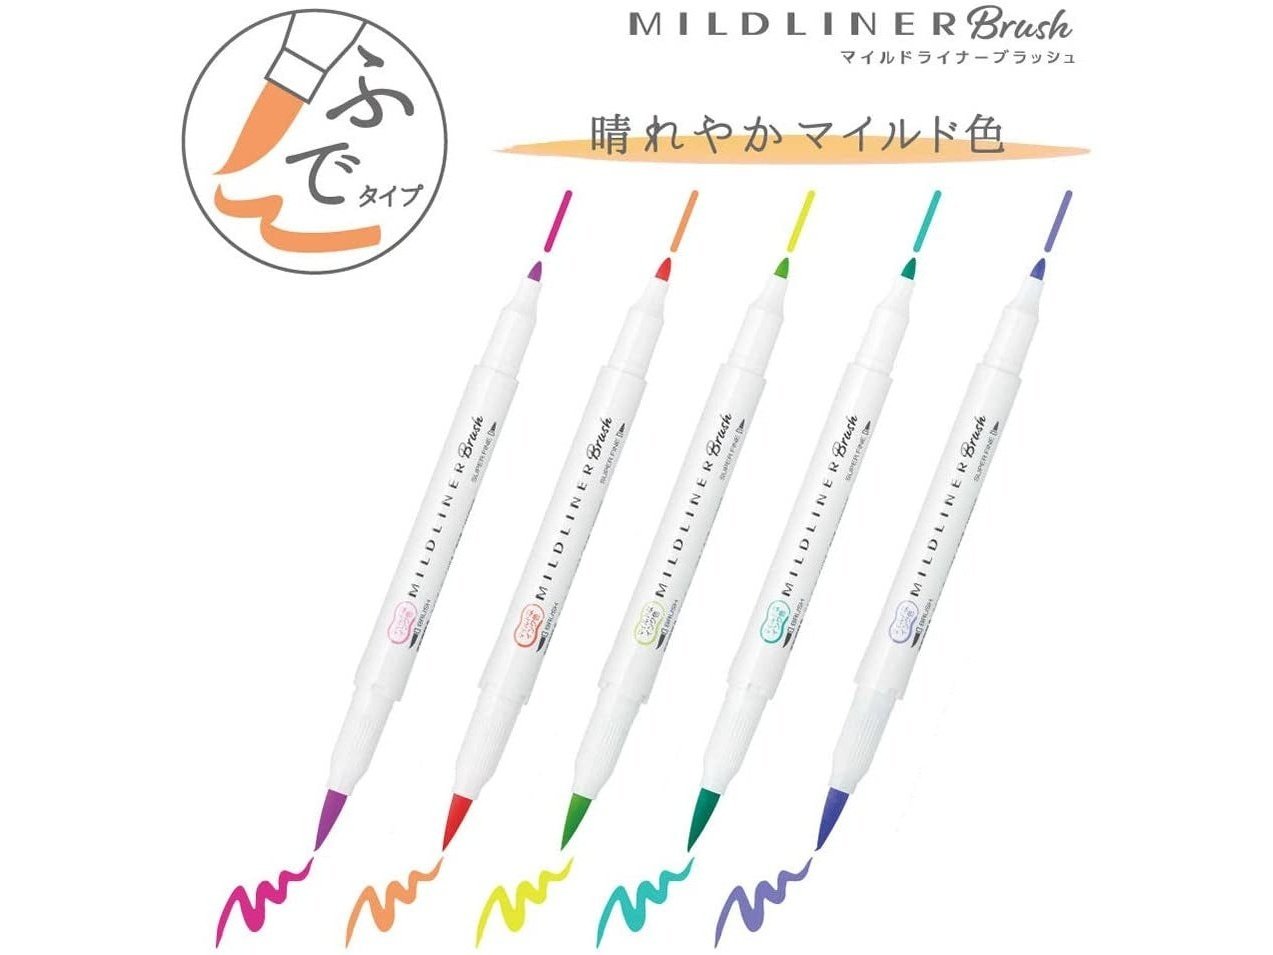 Zebra Mildliner Double Ended Brush Pen 5-Colour Set